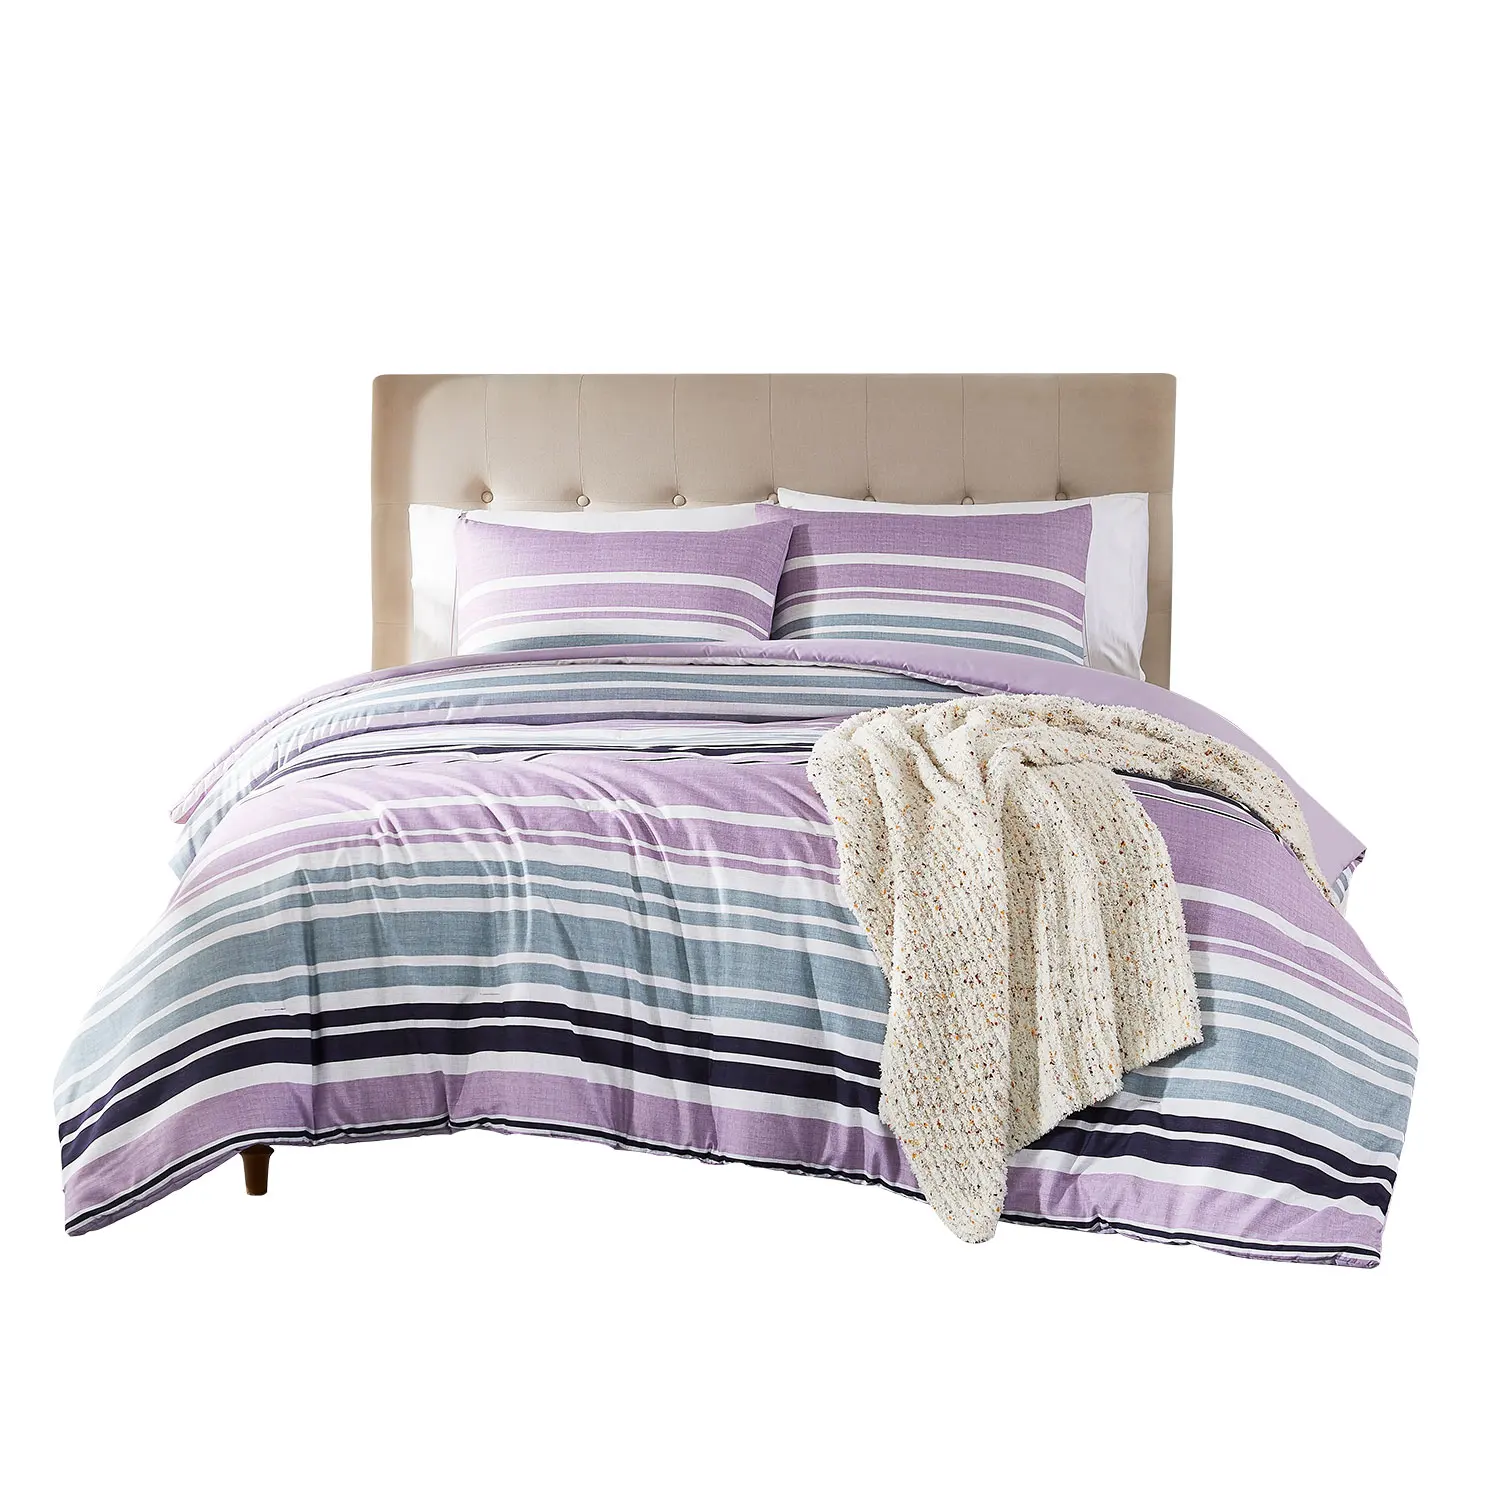 Nuevo juego de edredón de lujo de 3 piezas con rayas moradas y grises, ropa de cama de poliéster con bloques de color en calidad superior